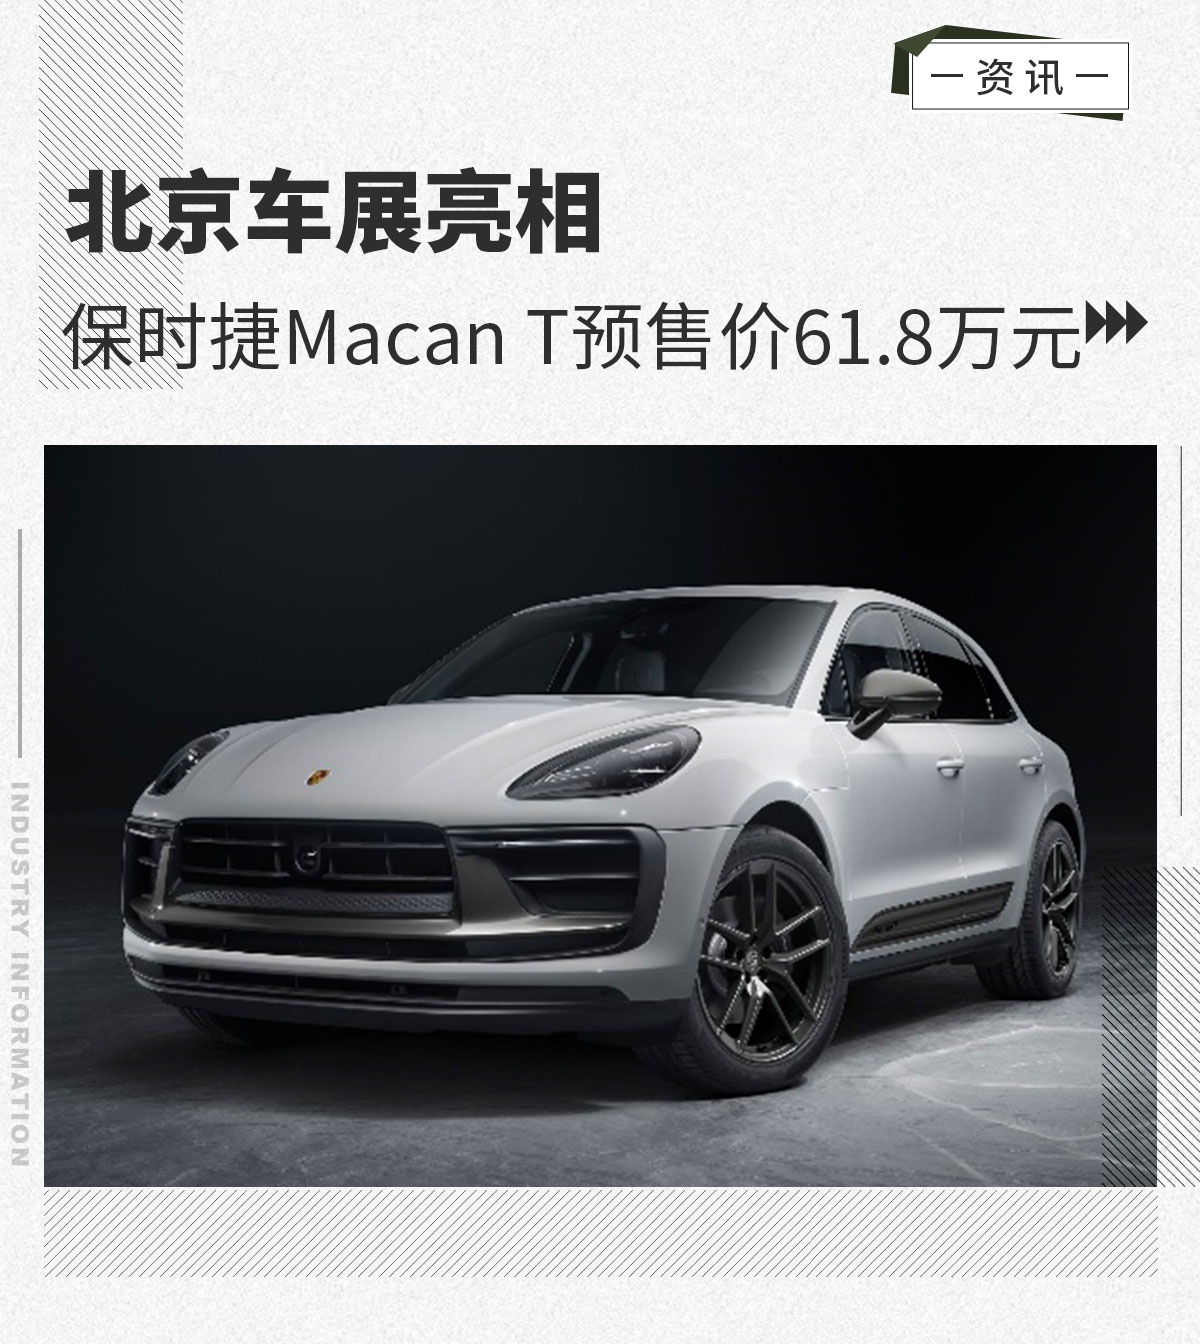 北京车展亮相 保时捷Macan T预售价61.8万元